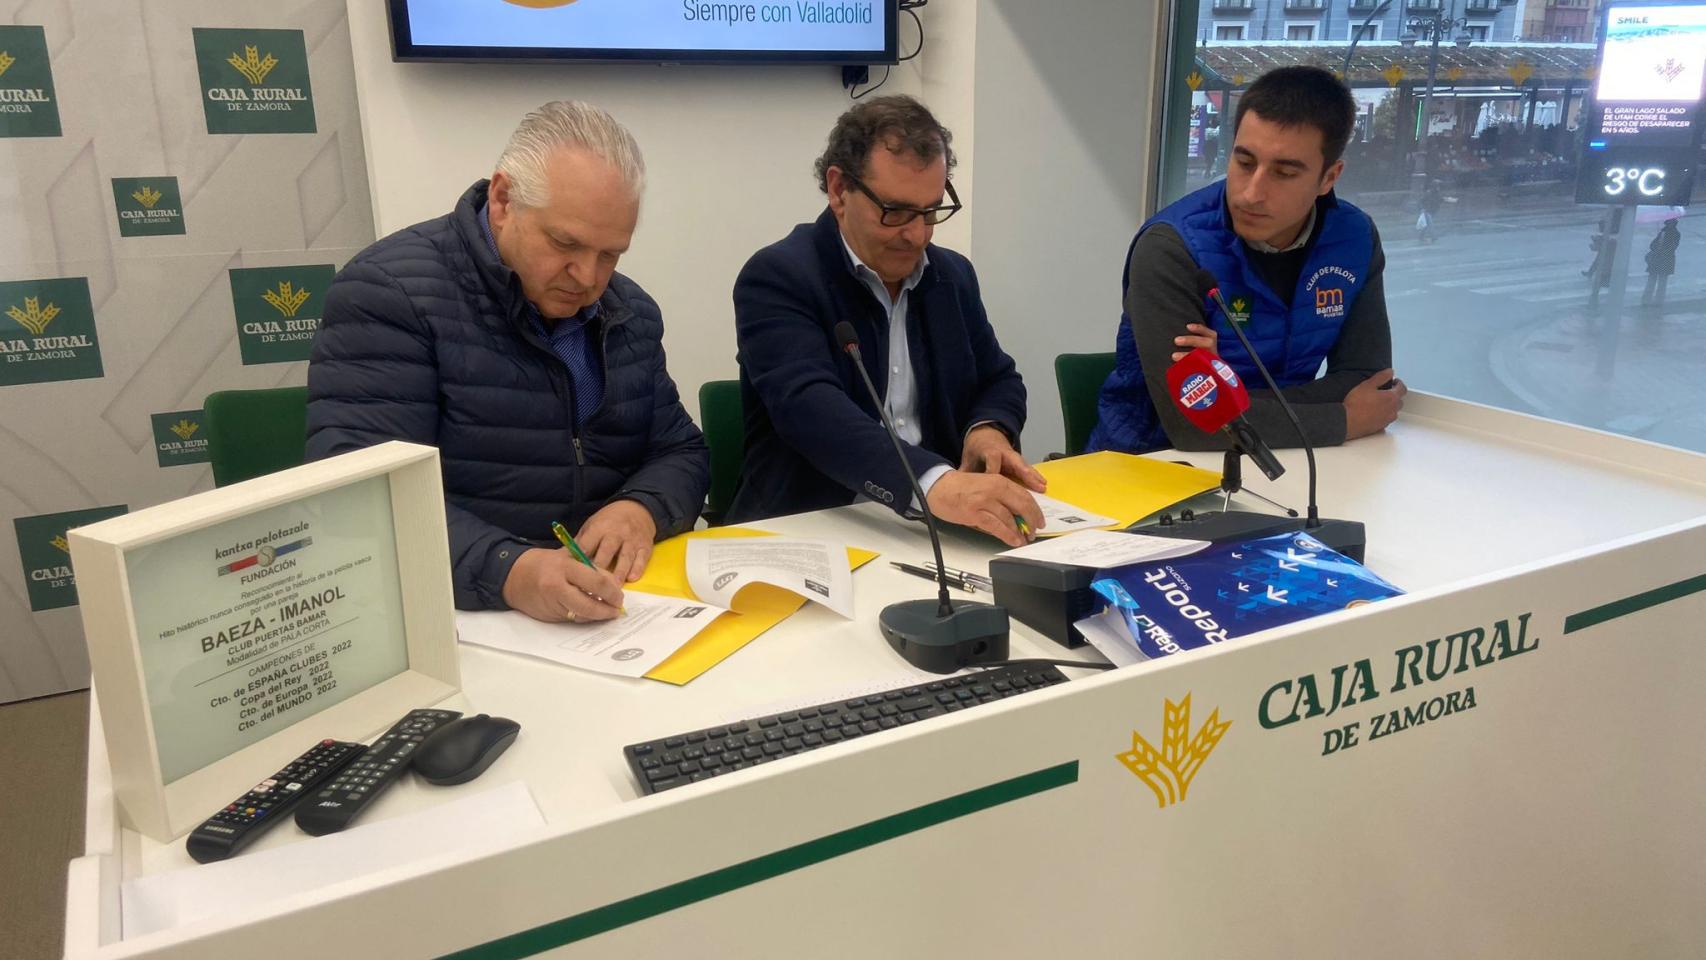 Narciso Prieto, Pedro Martínez y Carlos Baeza en la firma del convenio entre Caja Rural de Zamora y el Puertas Bamar.